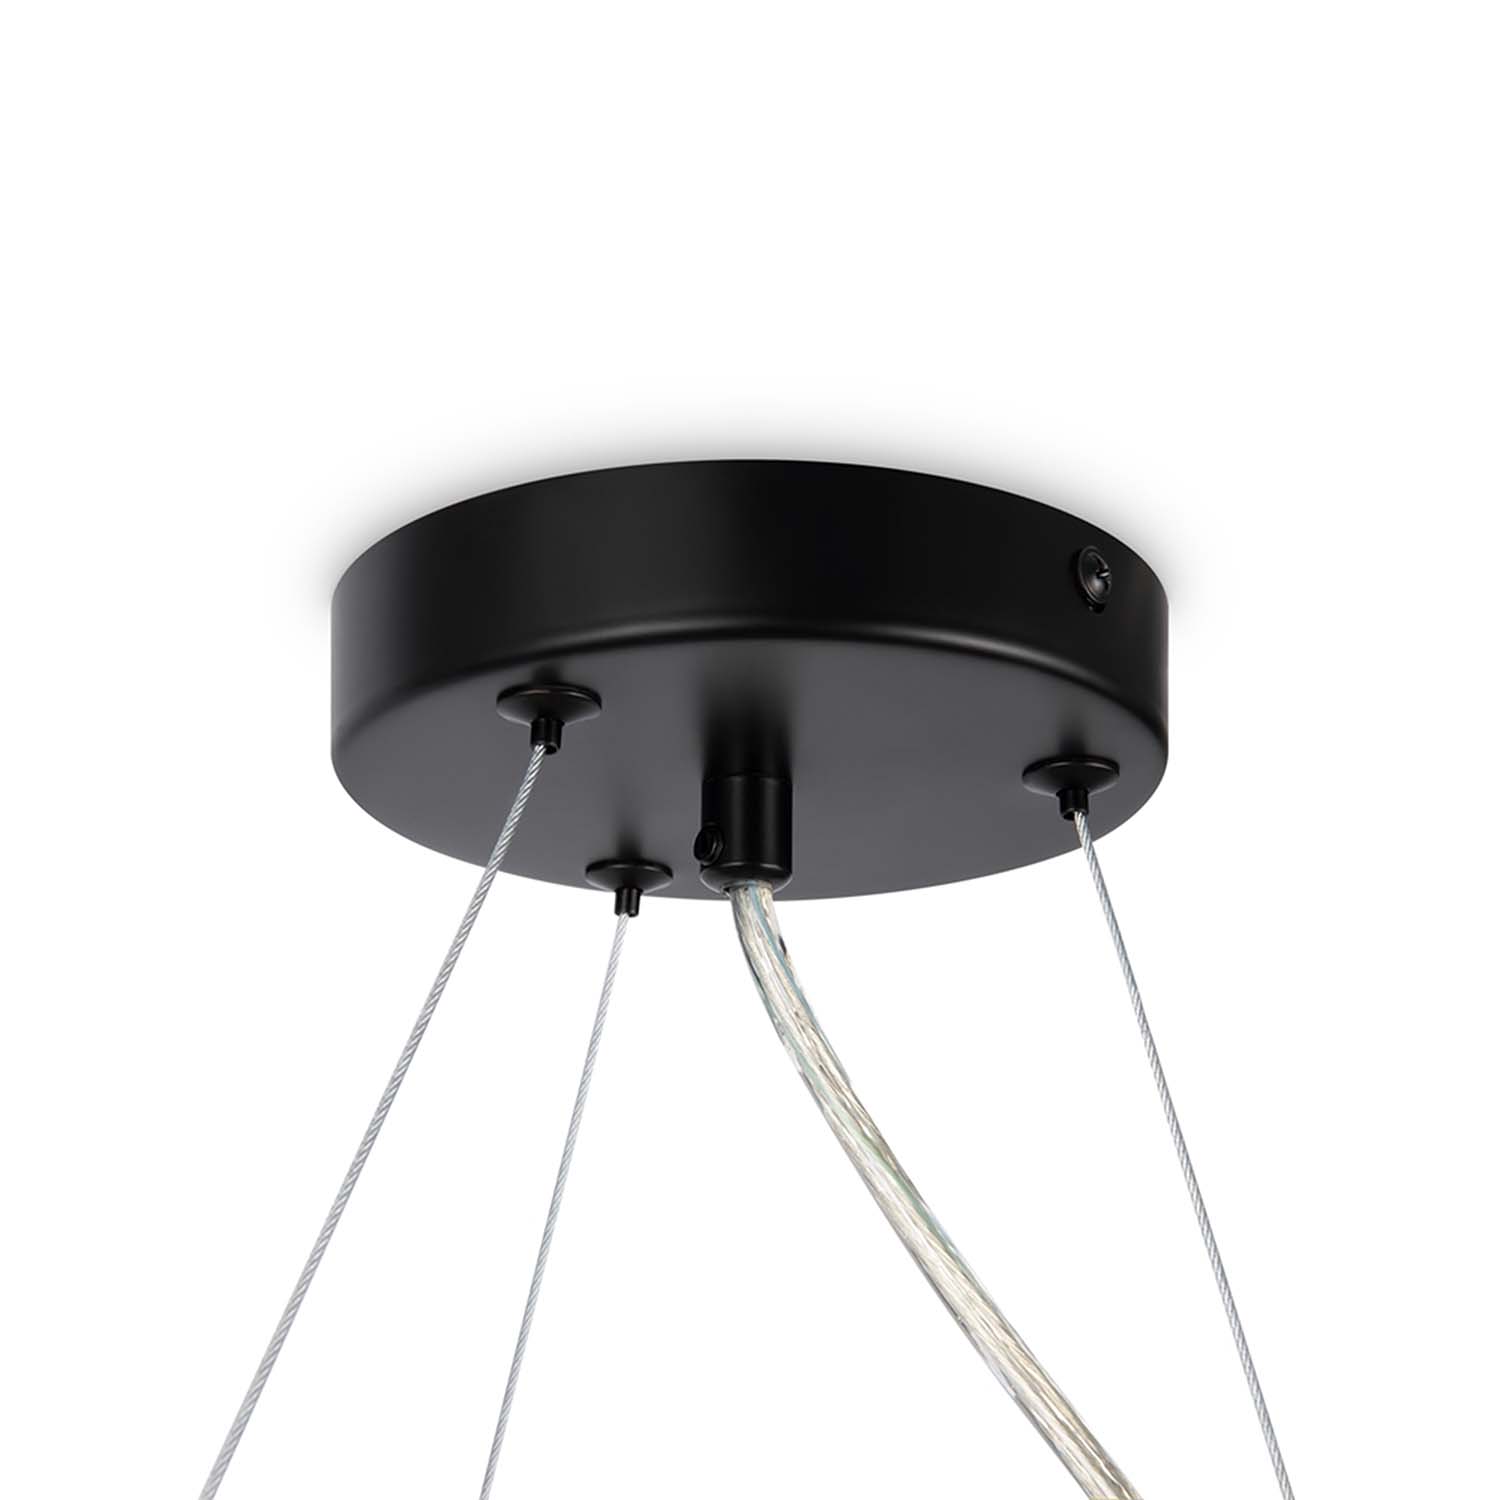 DALLAS - Round chandelier with modern glass balls